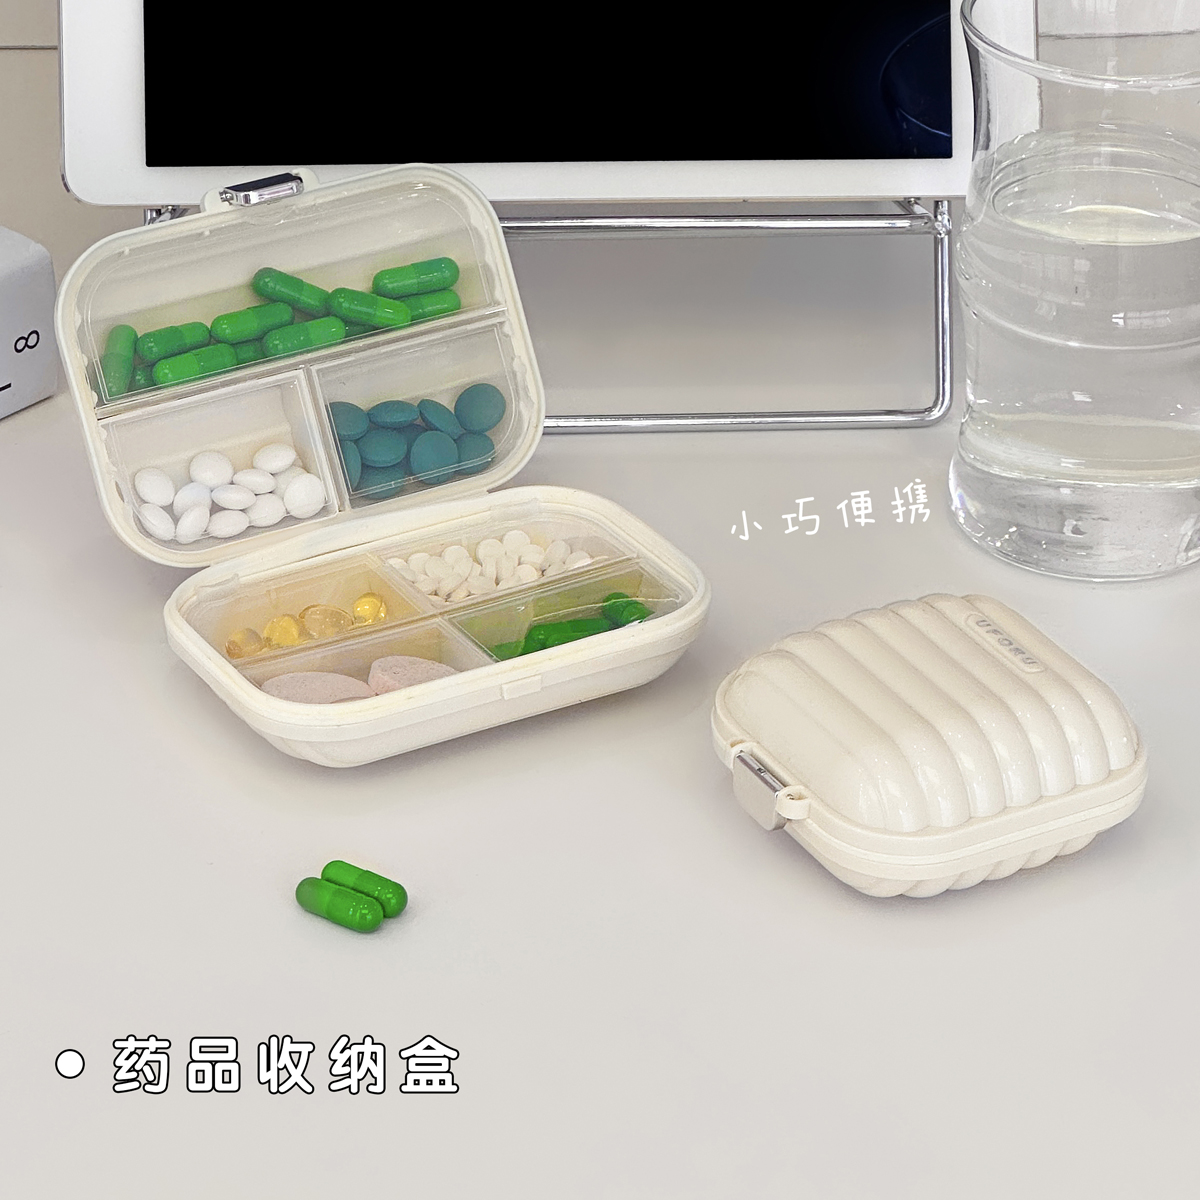 便携式药盒分装一周七天随身药品分装盒旅行便携迷你分药器收纳盒 - 图1